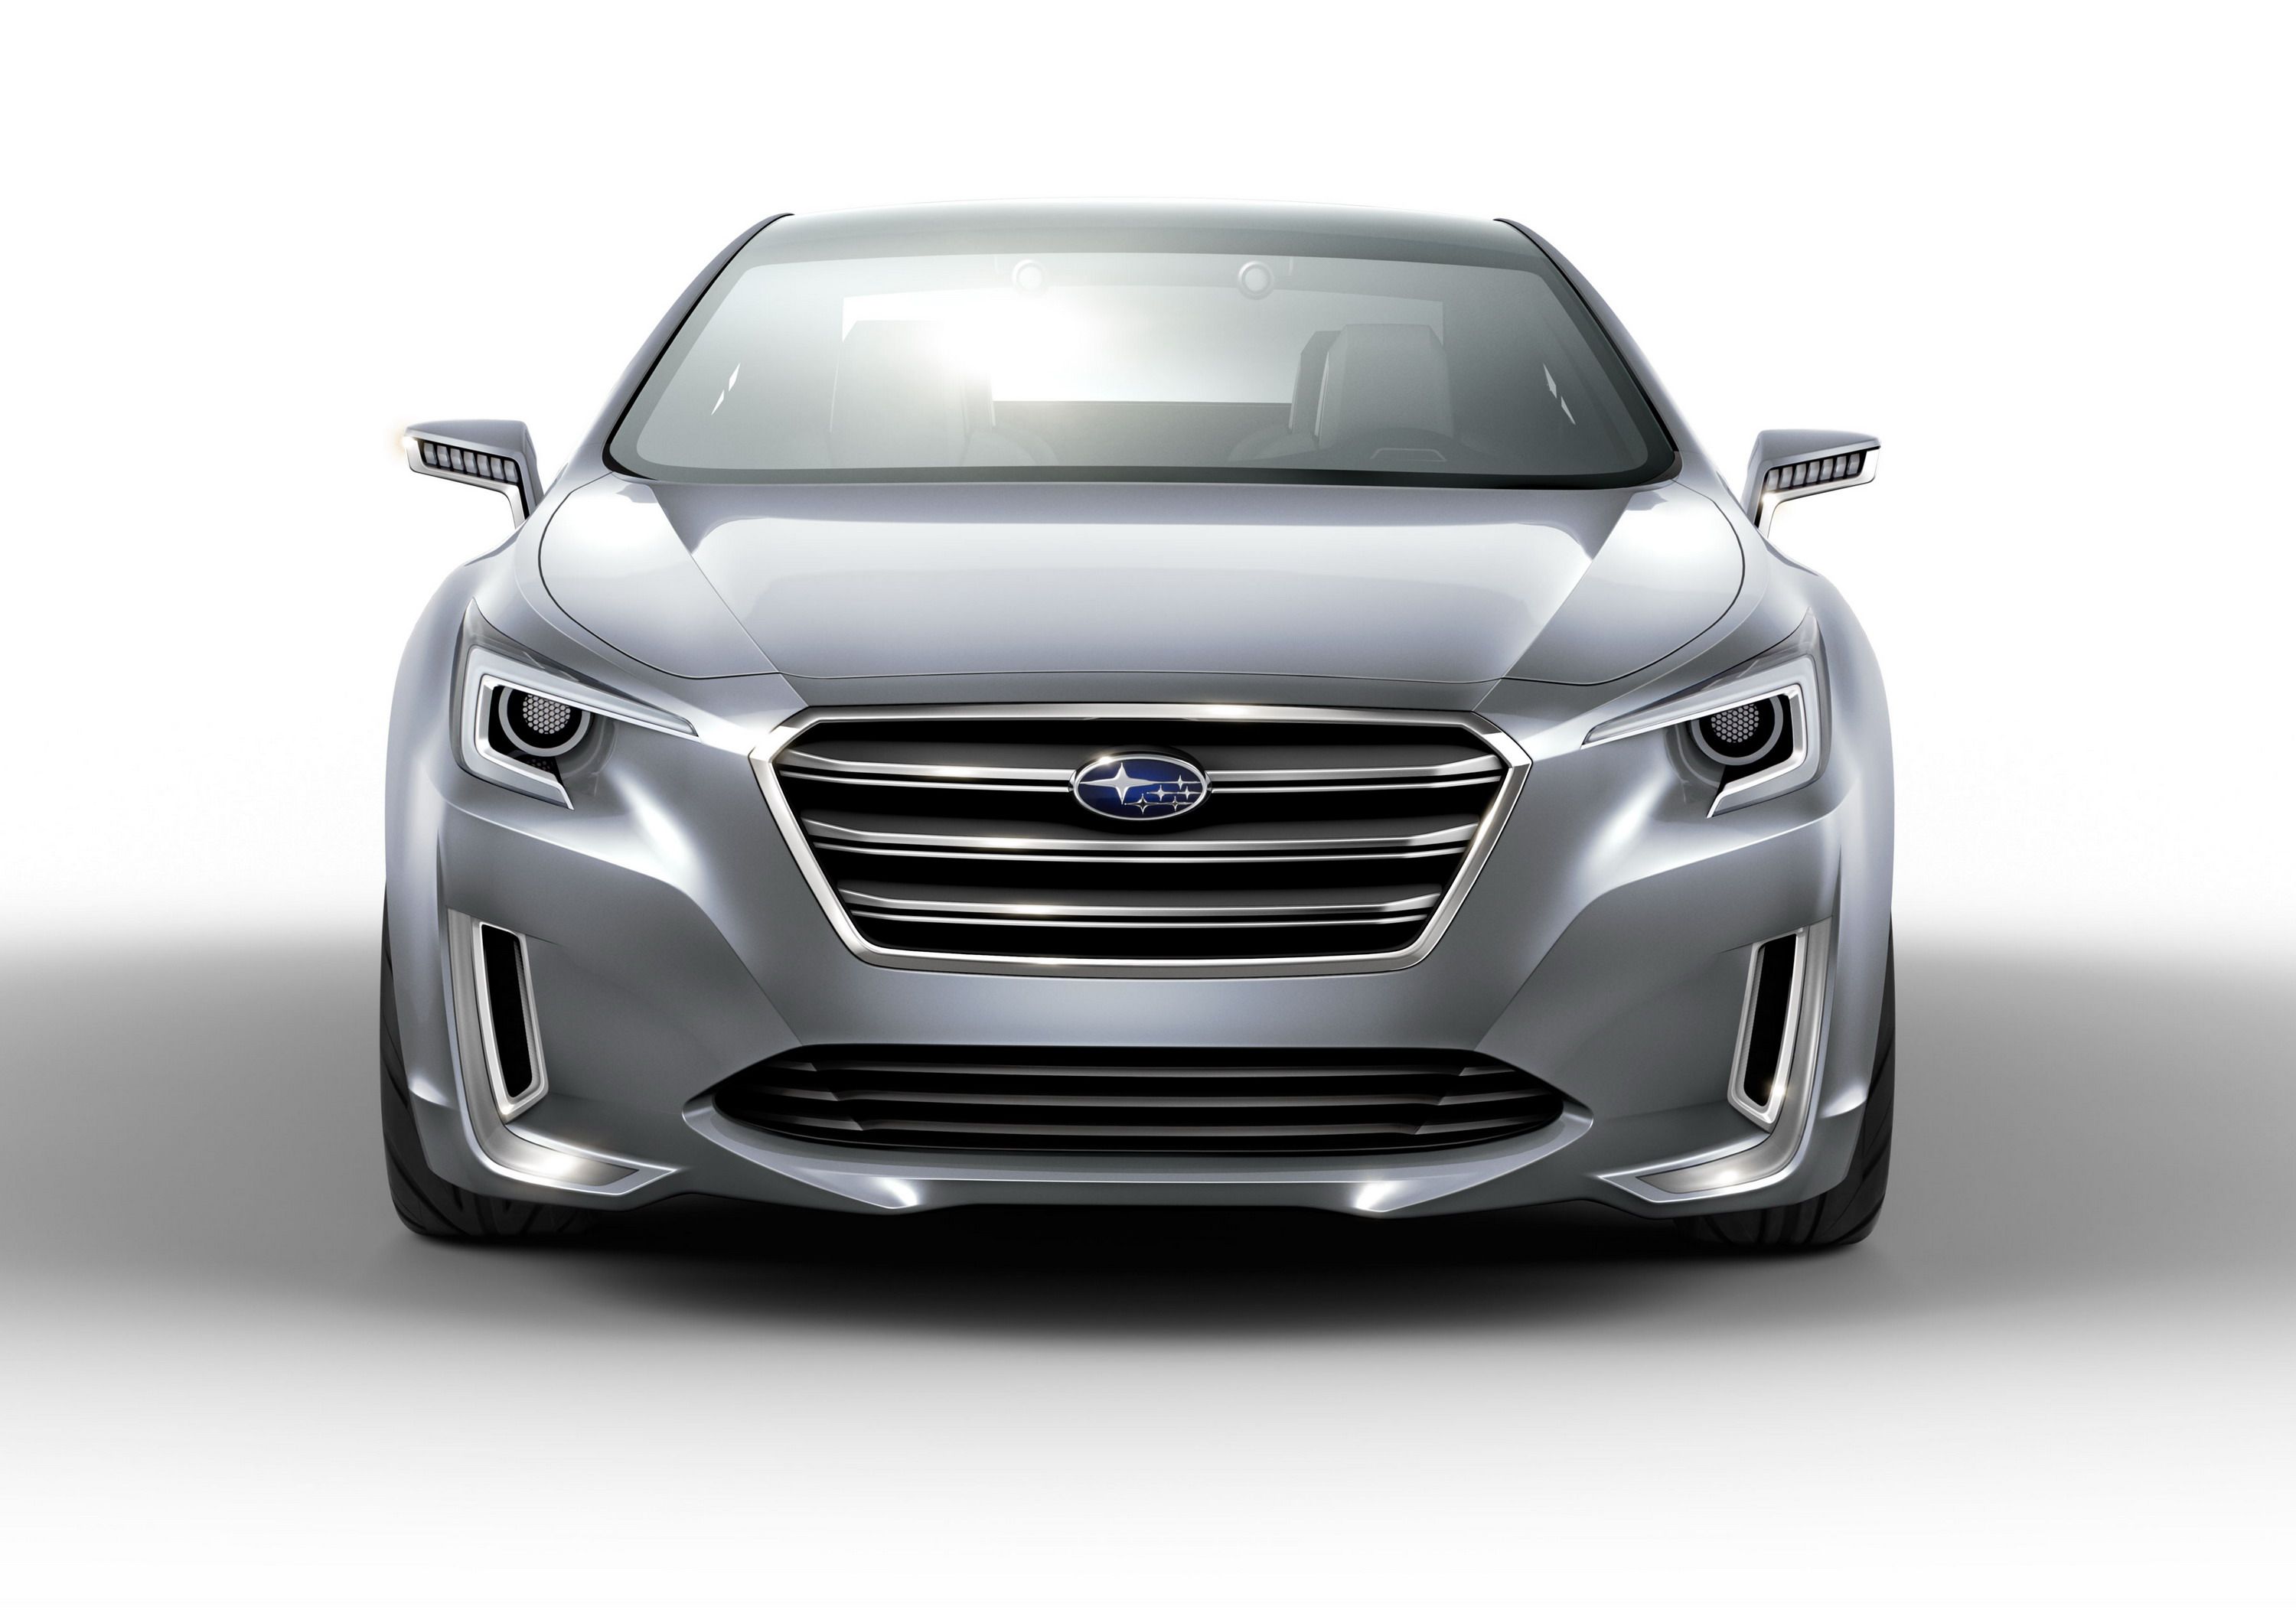 2013 Subaru Legacy Concept